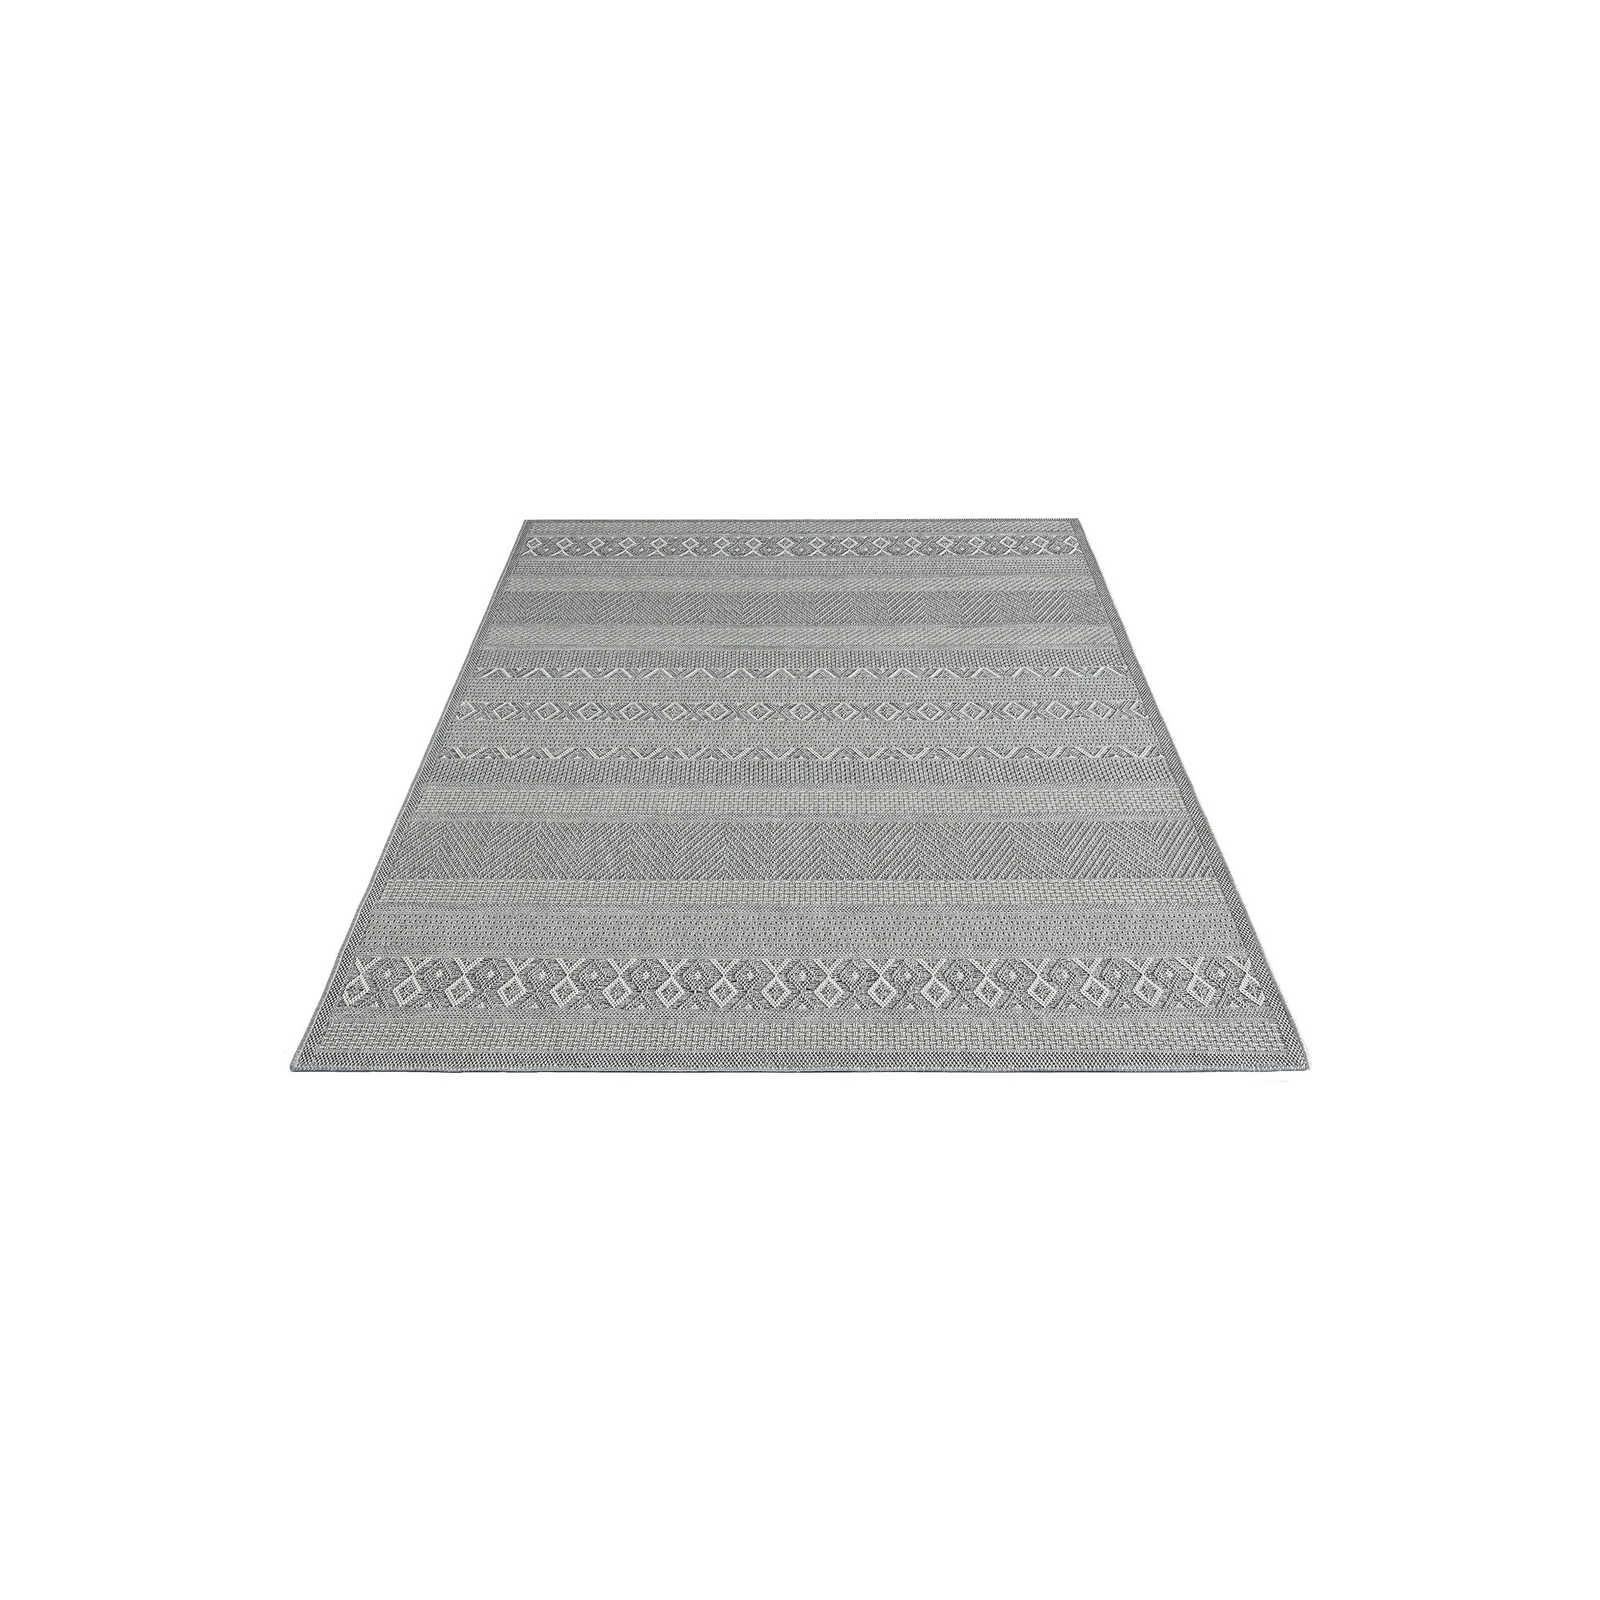 Tapis d'extérieur à motifs simples en gris - 150 x 80 cm
